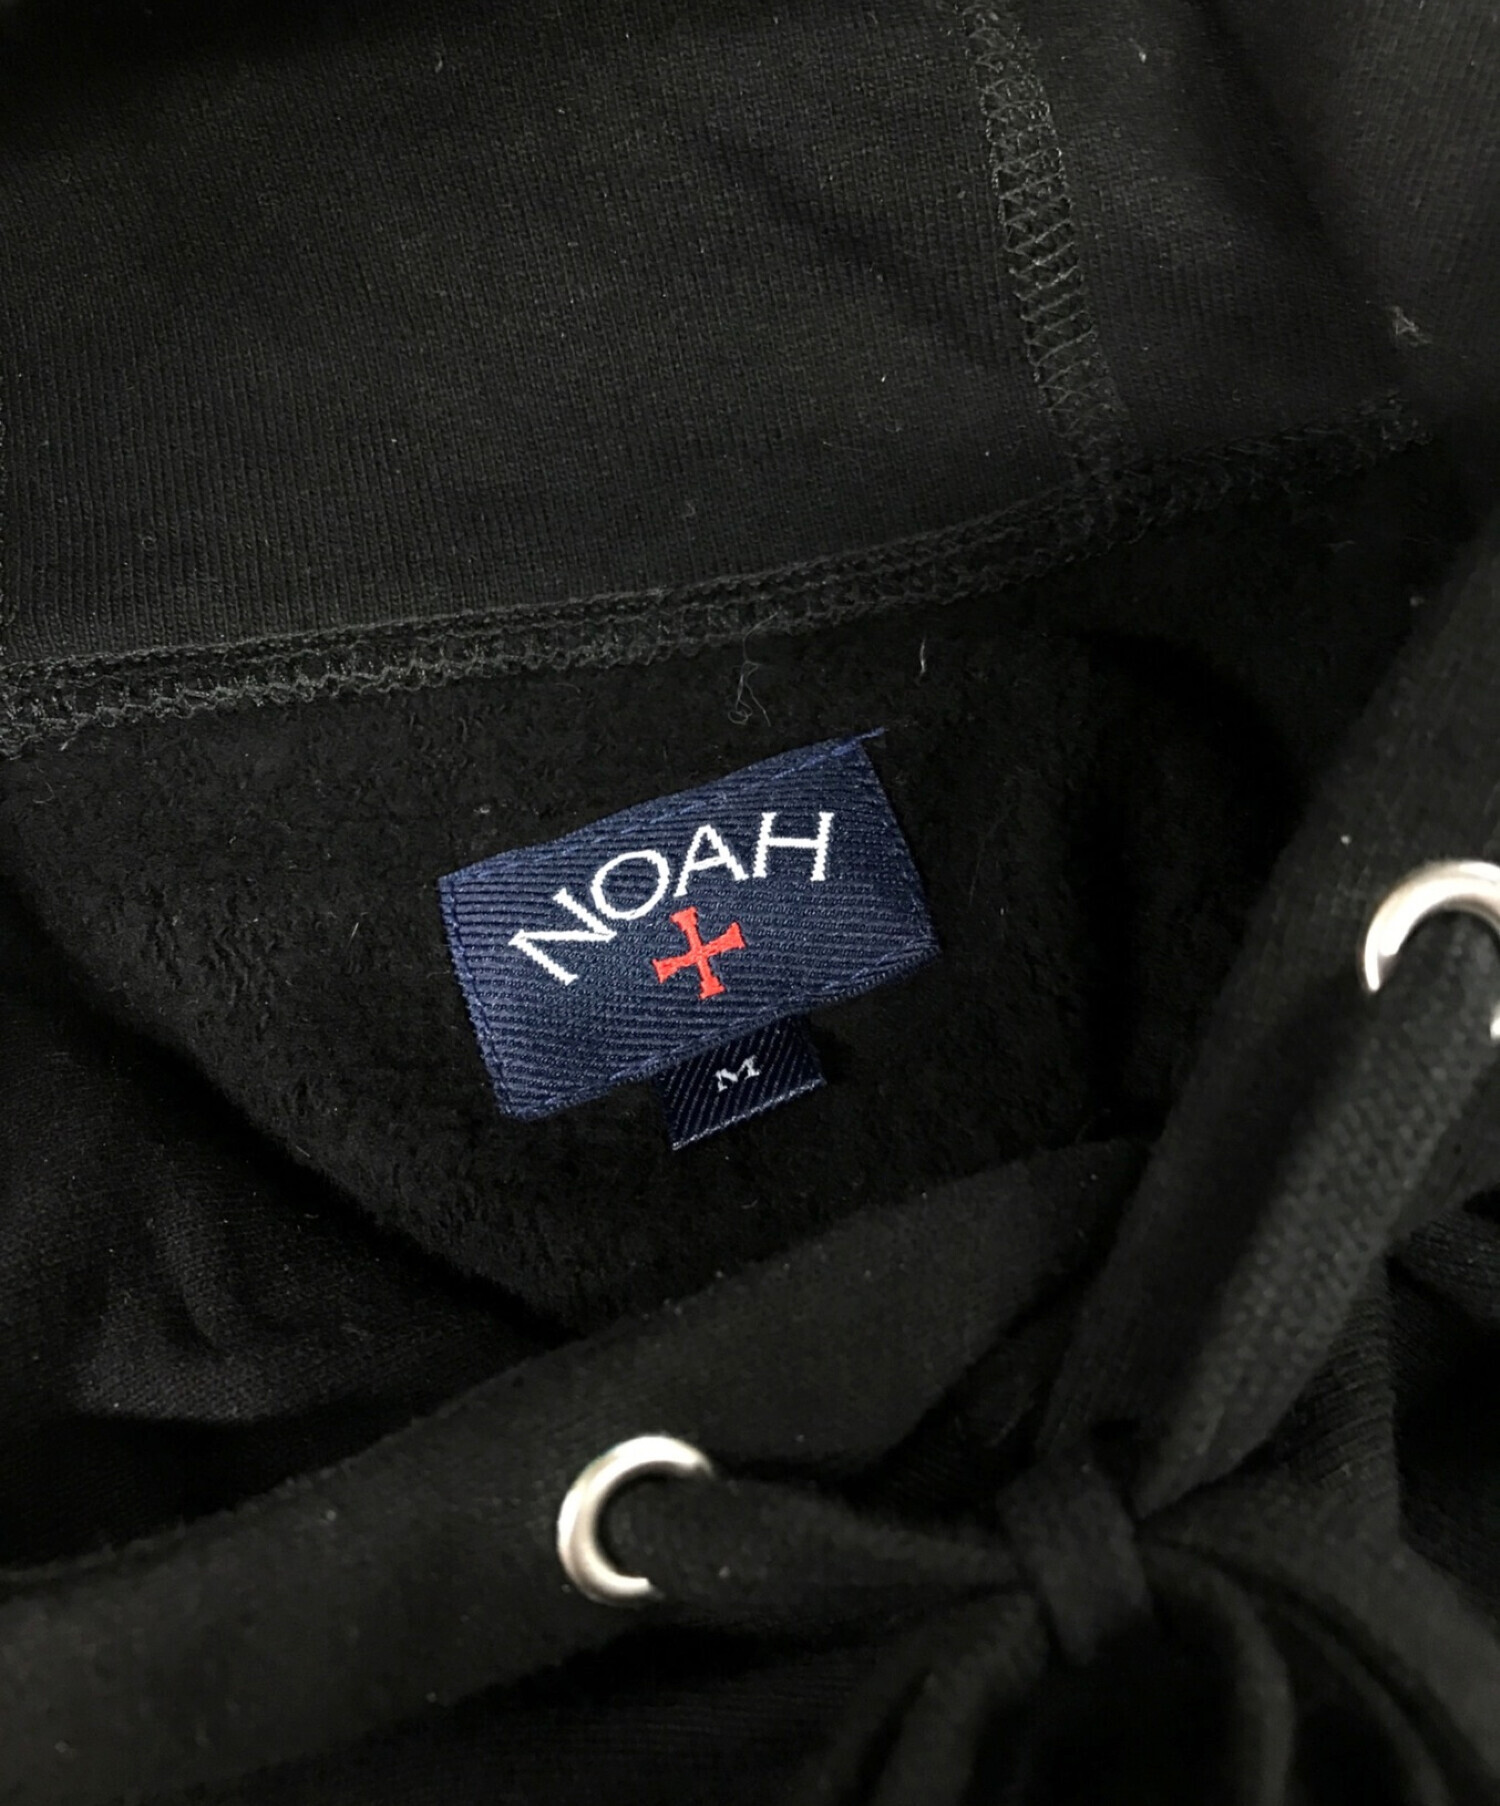 中古・古着通販】Noah (ノア) cheetah logo hoodie ブラック サイズ:M